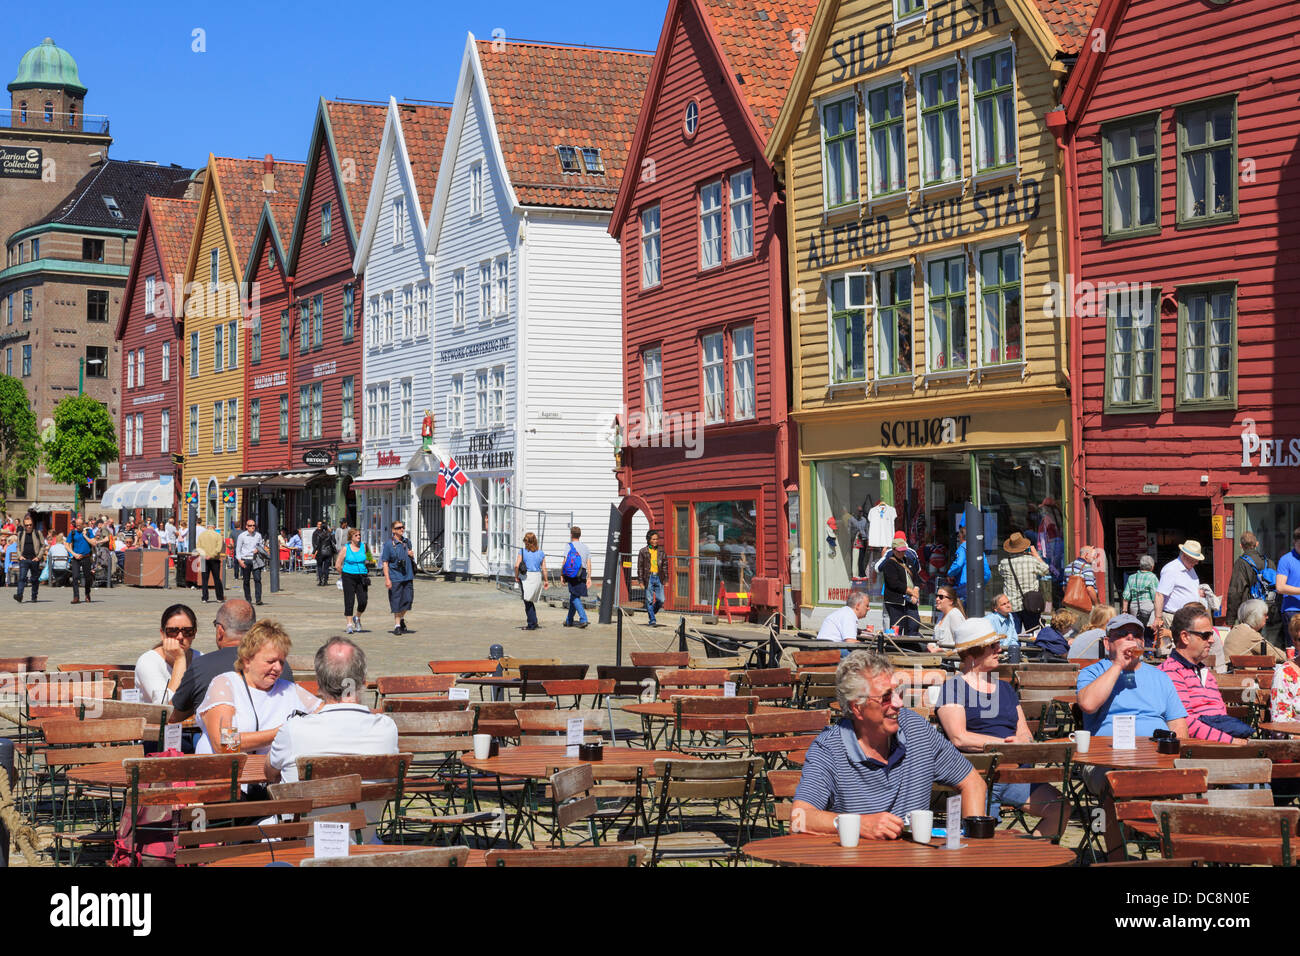 Persone per mangiare fuori in outdoor cafe' sul marciapiede sul lungomare di Bergen storica di edifici in legno in estate. Bryggen a Bergen in Norvegia Scandinavia Foto Stock